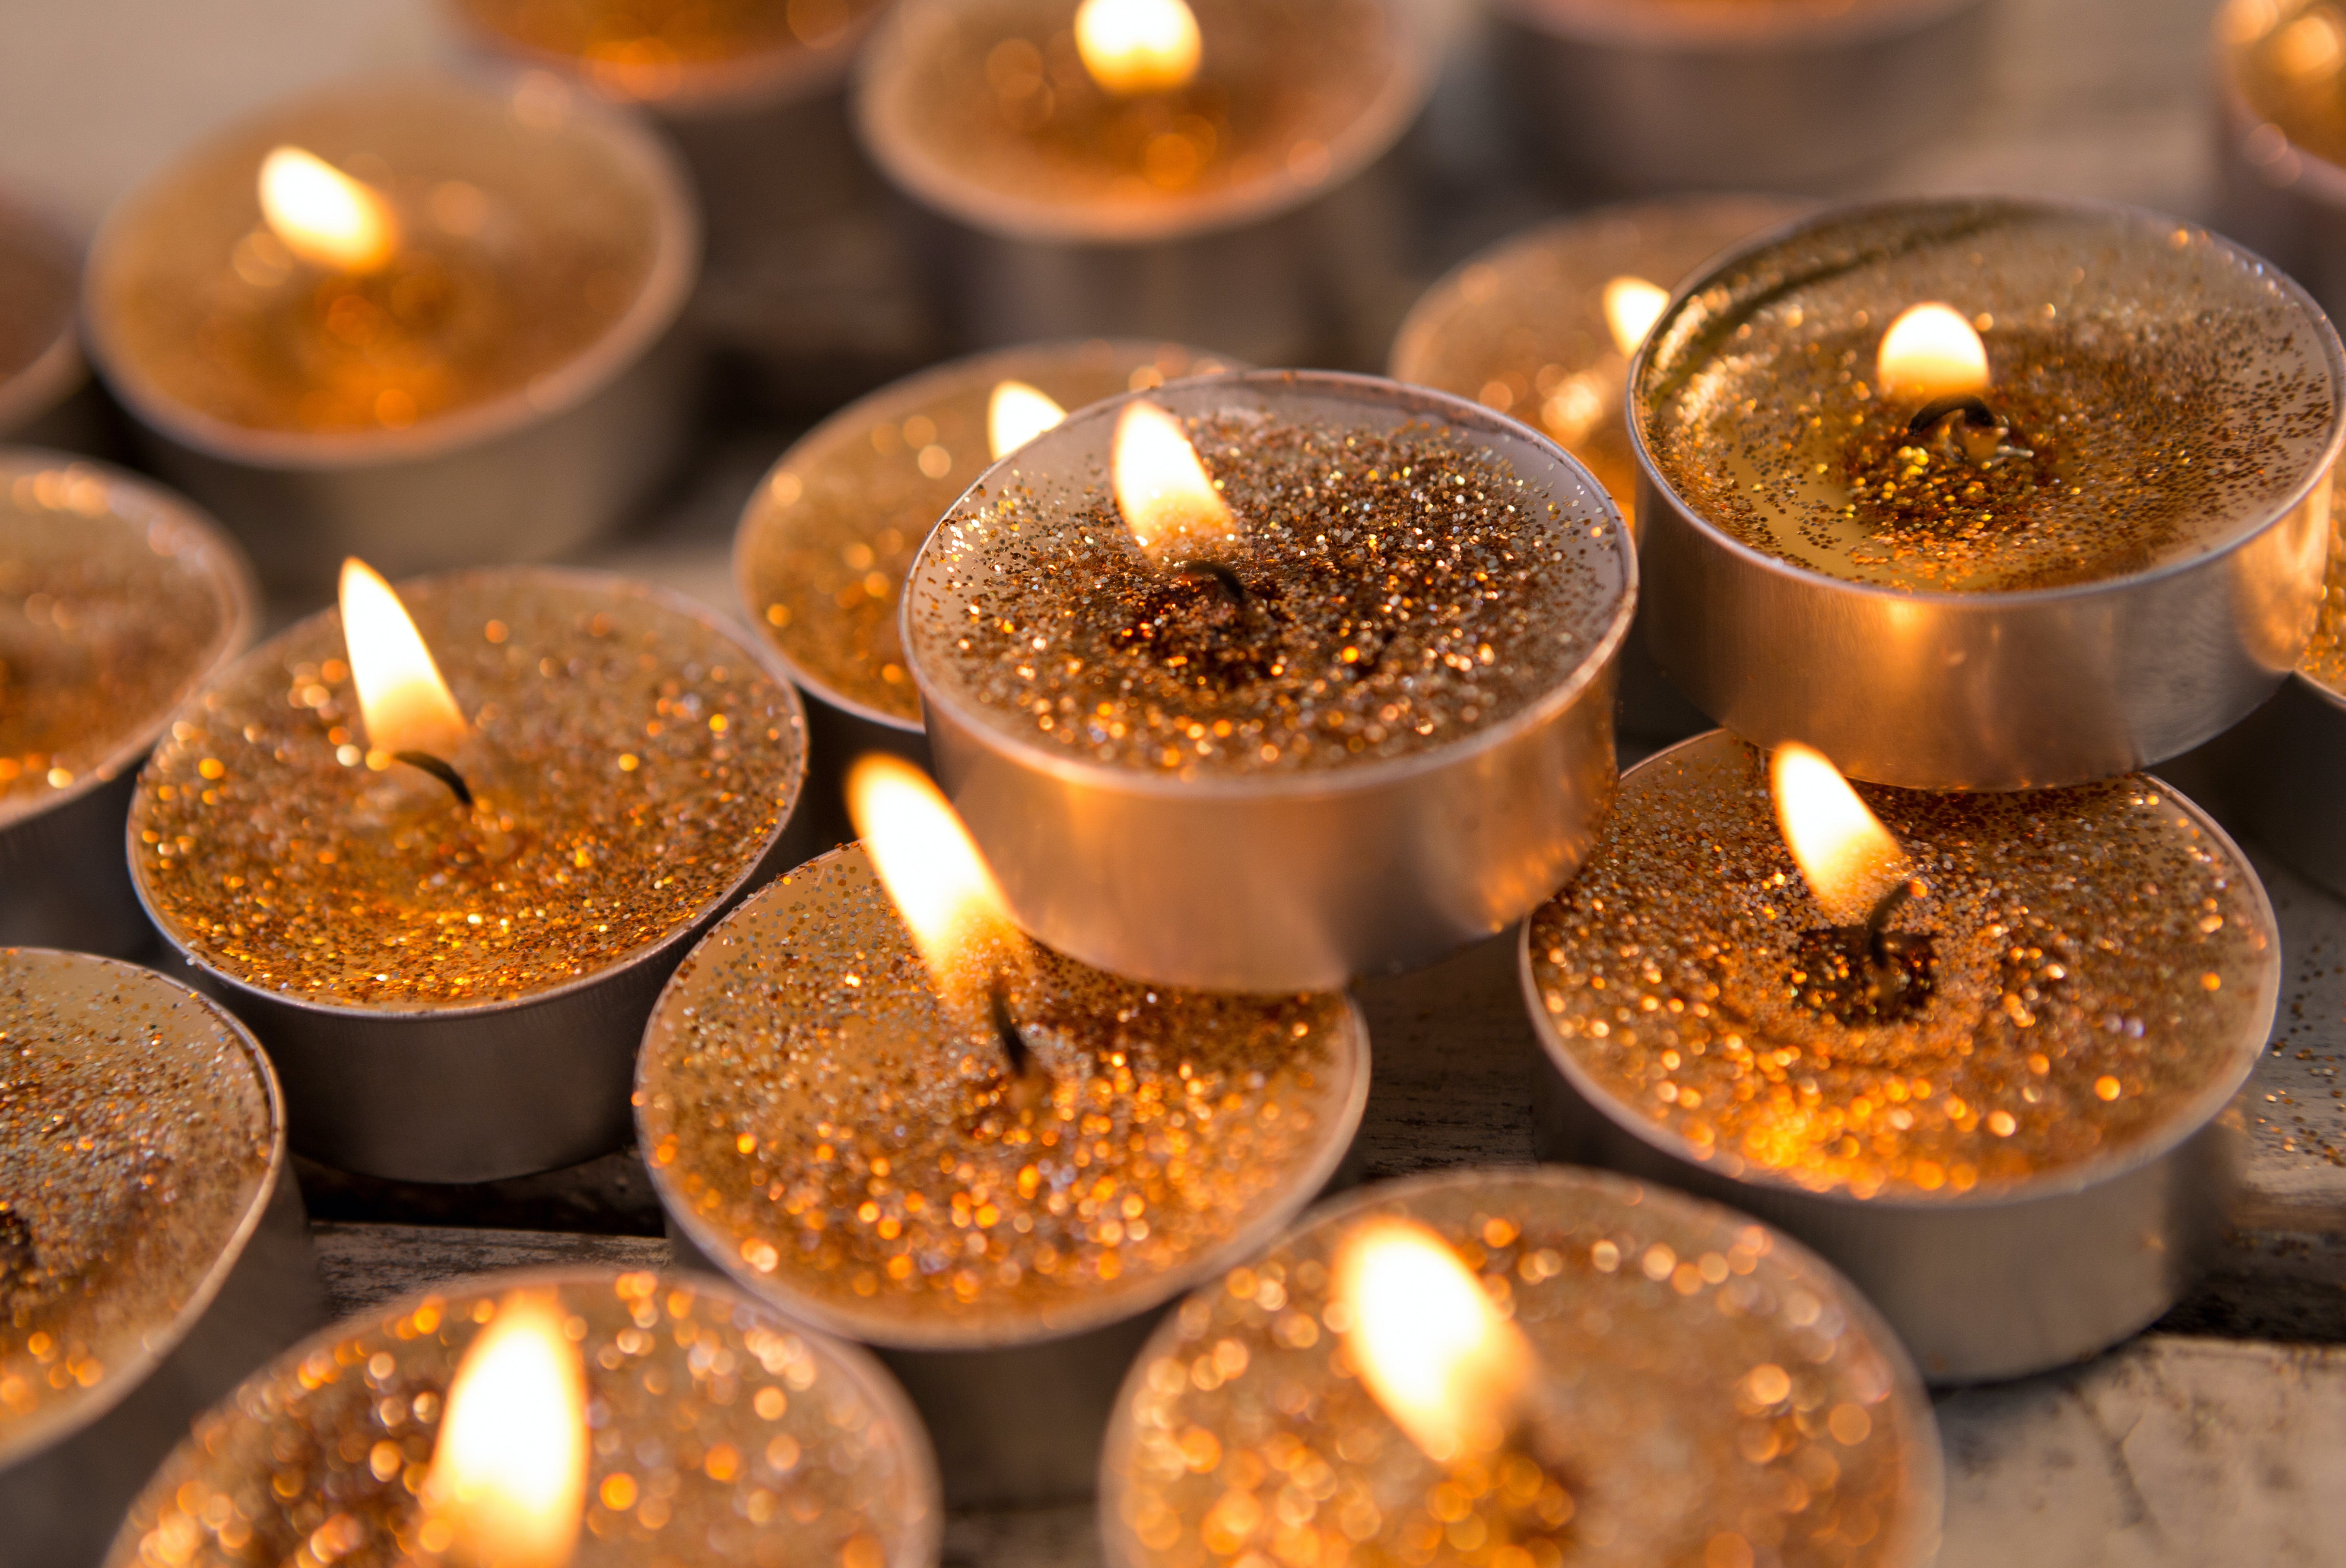 Can use Bioglitter in candles? – Glitter